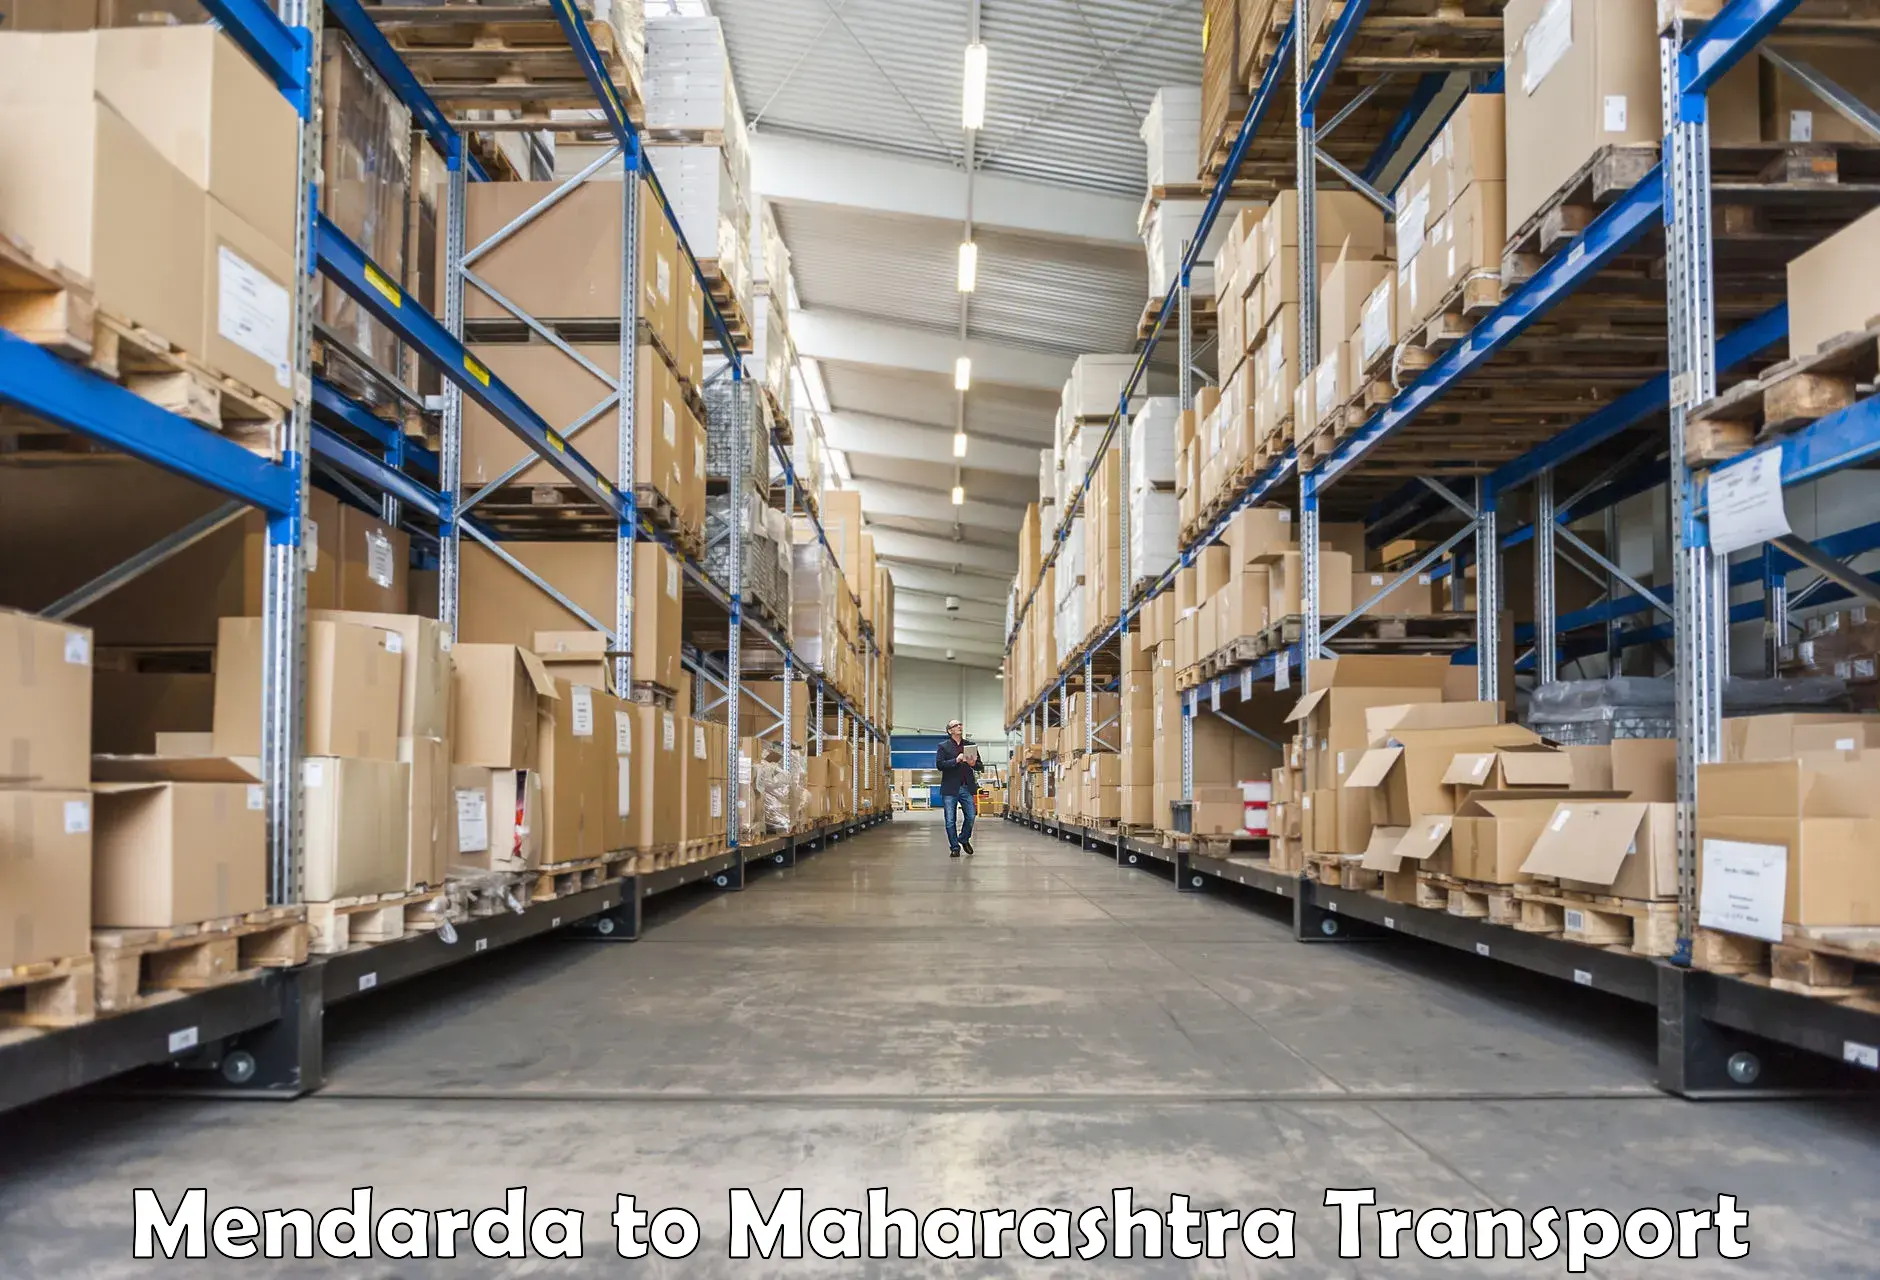 Furniture transport service Mendarda to Bhiwandi